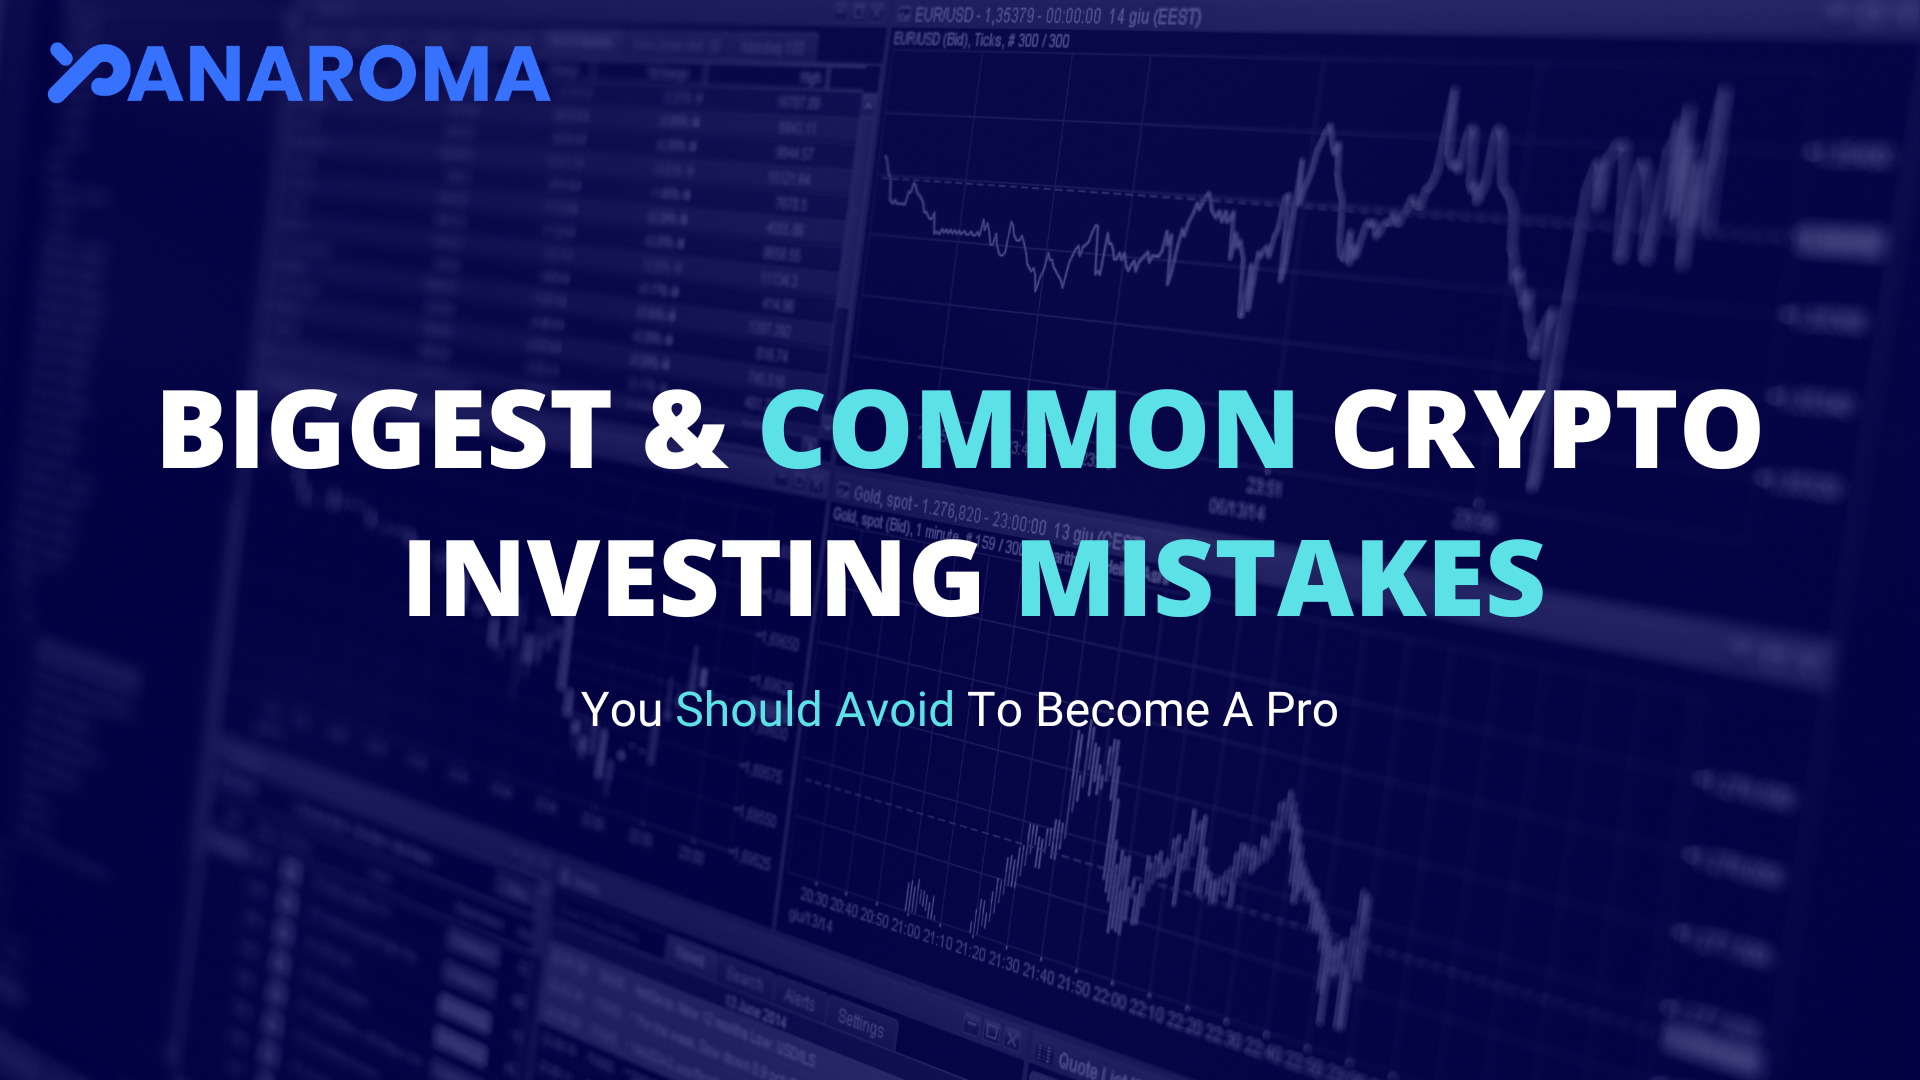 Cele mai mari și obișnuite greșeli de investiții cripto care trebuie evitate: un ghid cuprinzător